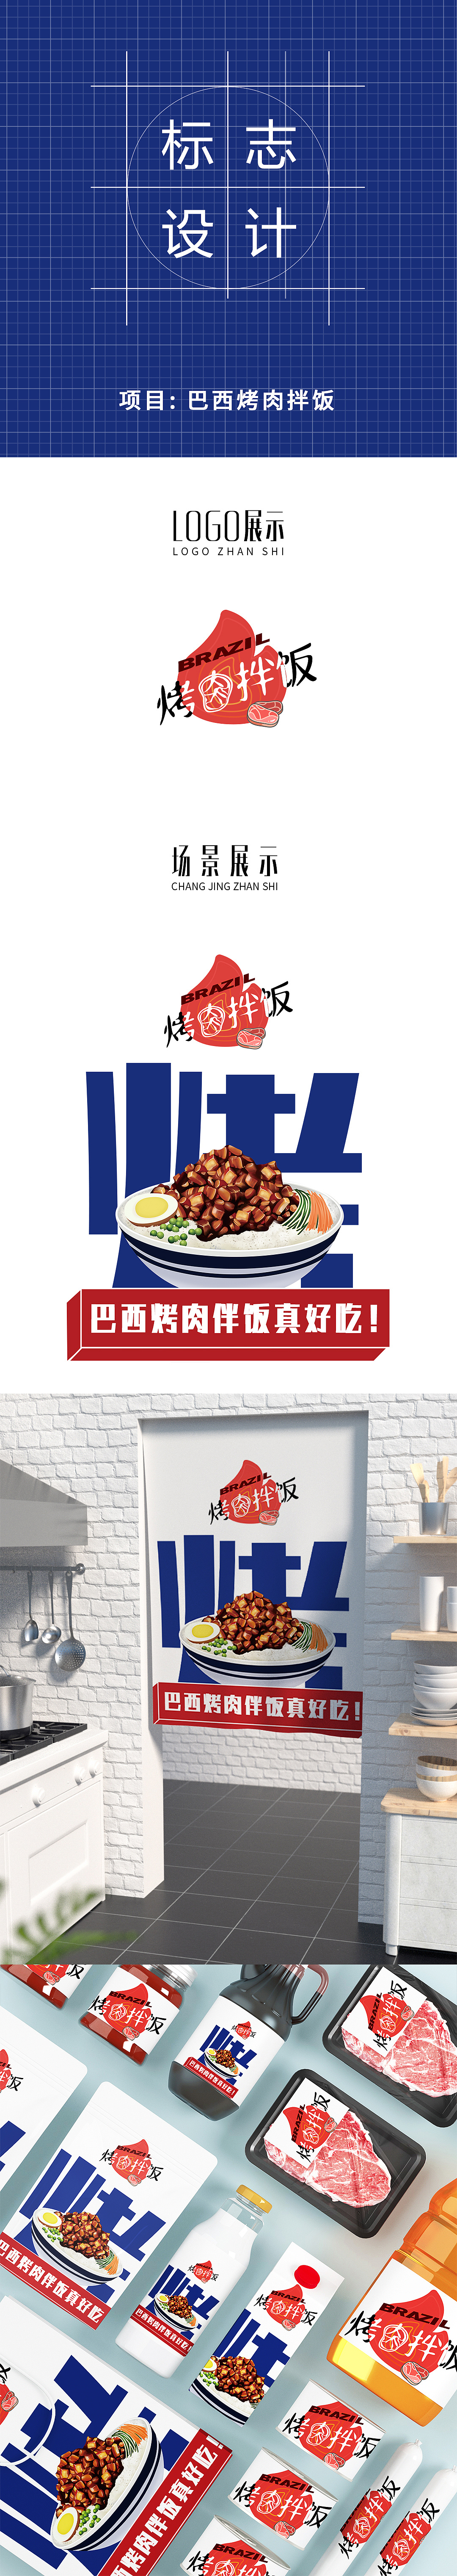 土耳其烤肉拌饭 logo图片